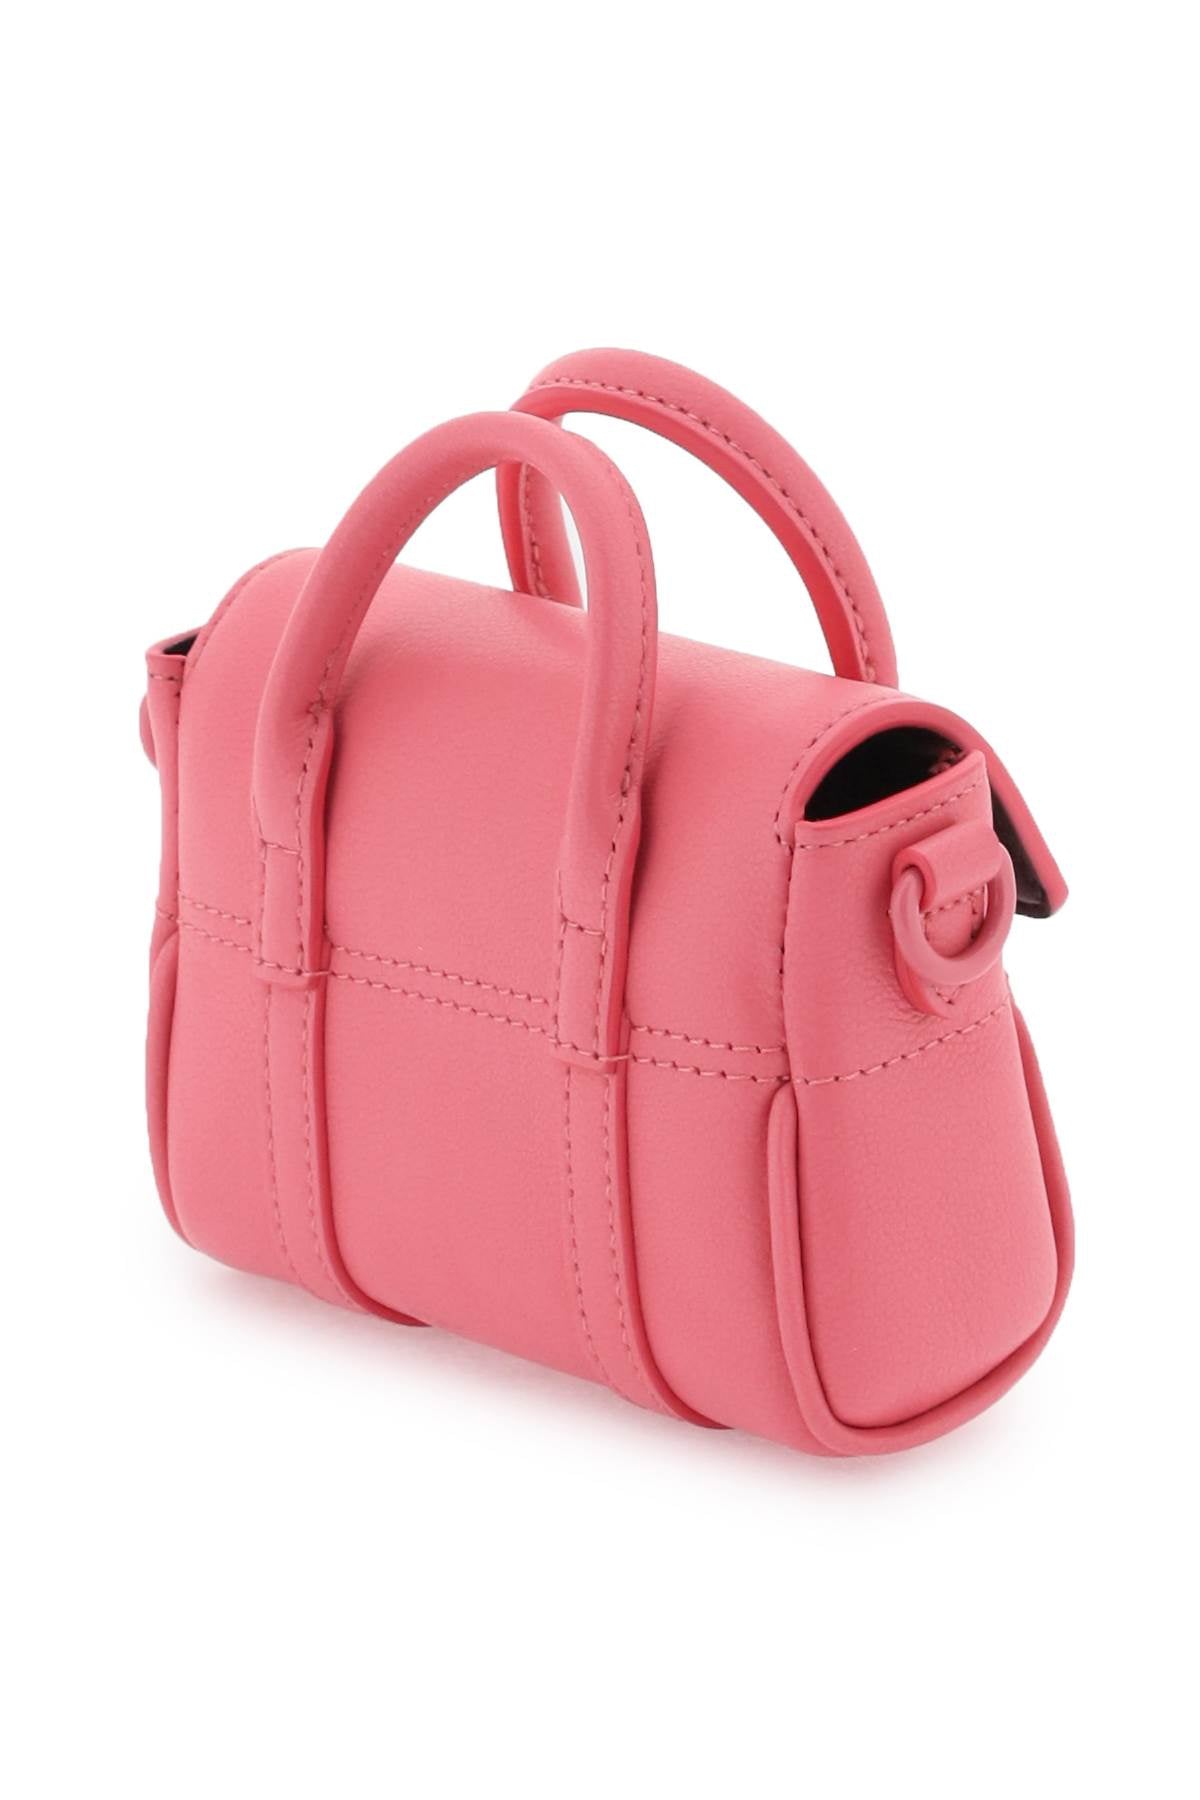 Túi xách da lộn hạt màu hồng Pink Grained cho nữ